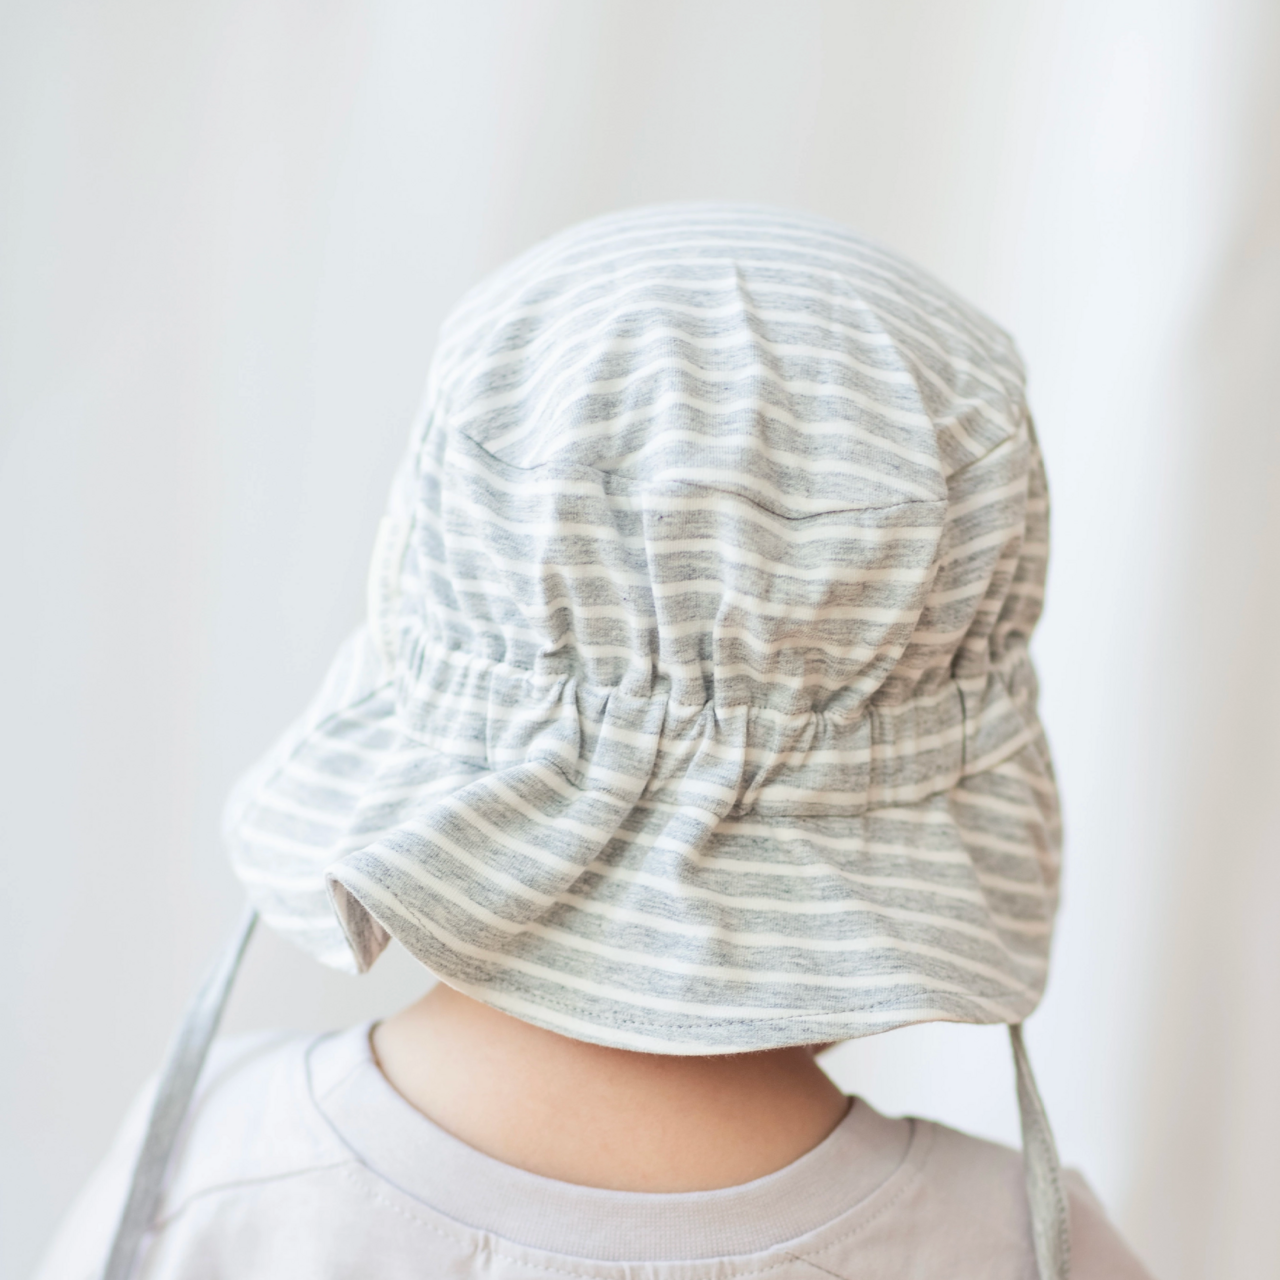 UV Sunny hat Classic Grey mel/white 10m-2Y